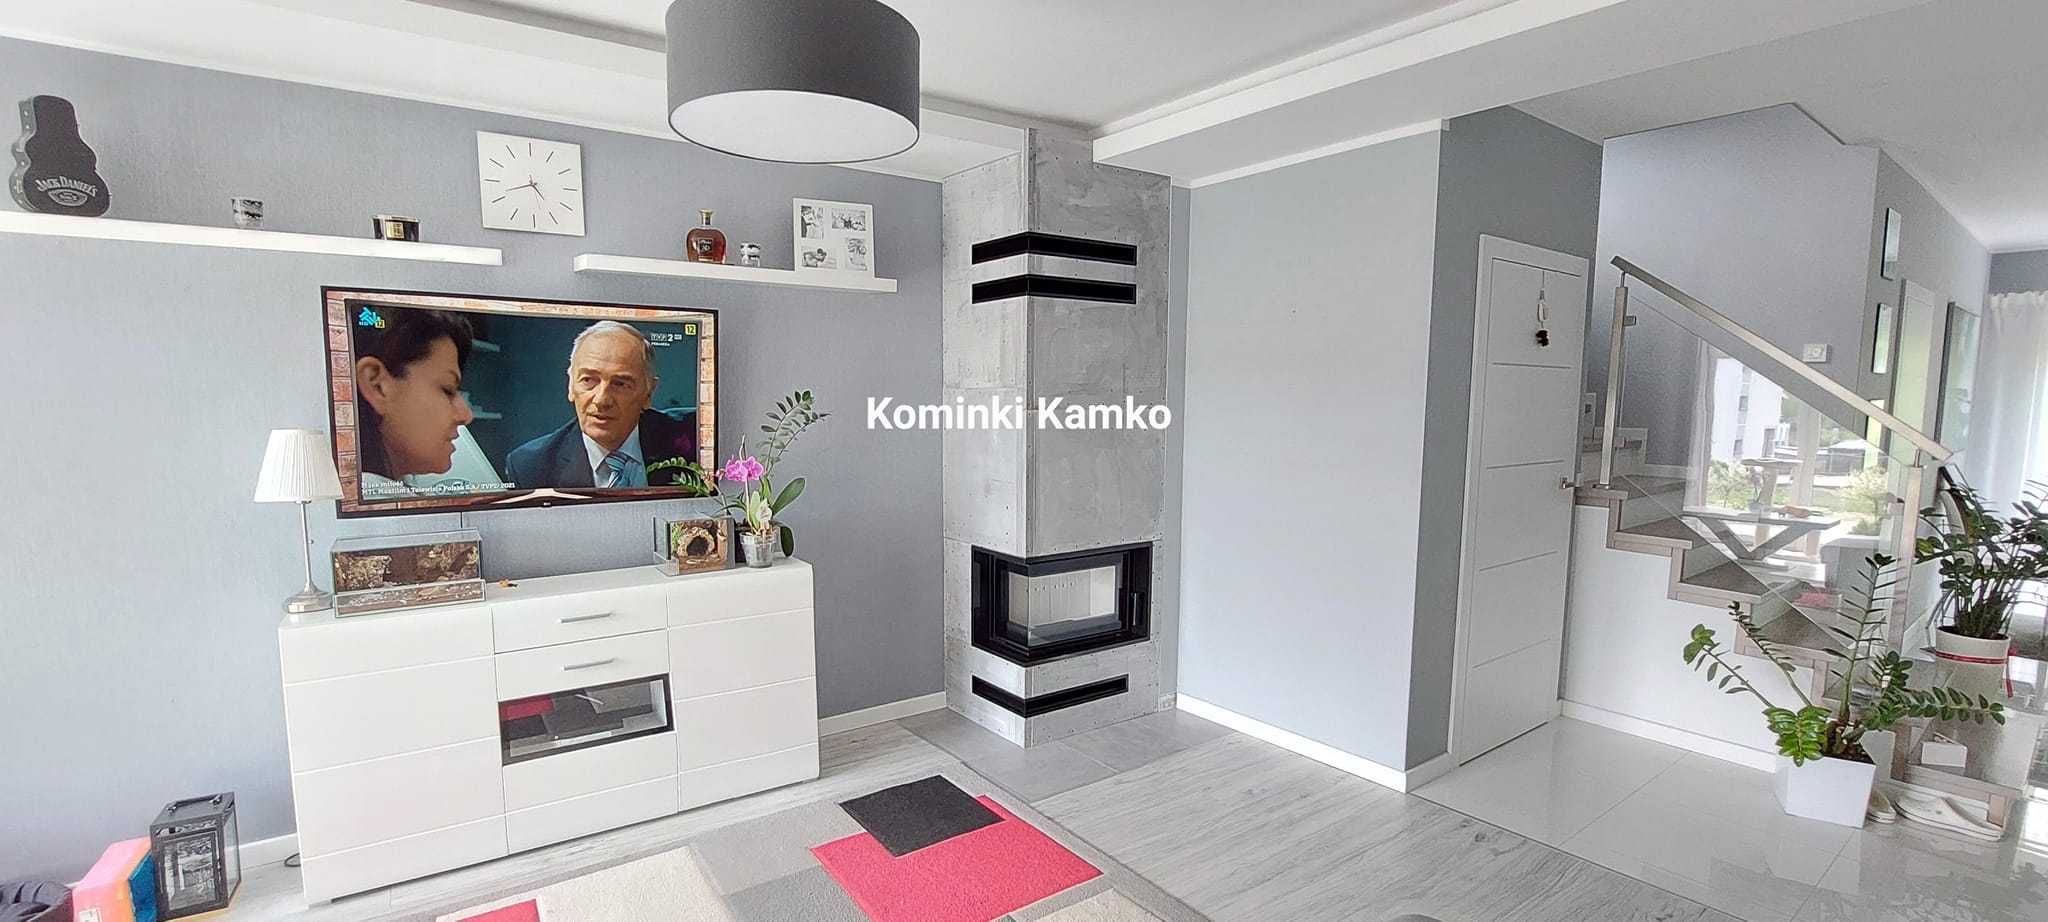 Kominki Kamko - wkład narożny Kratki Simple S BS w zabudowie